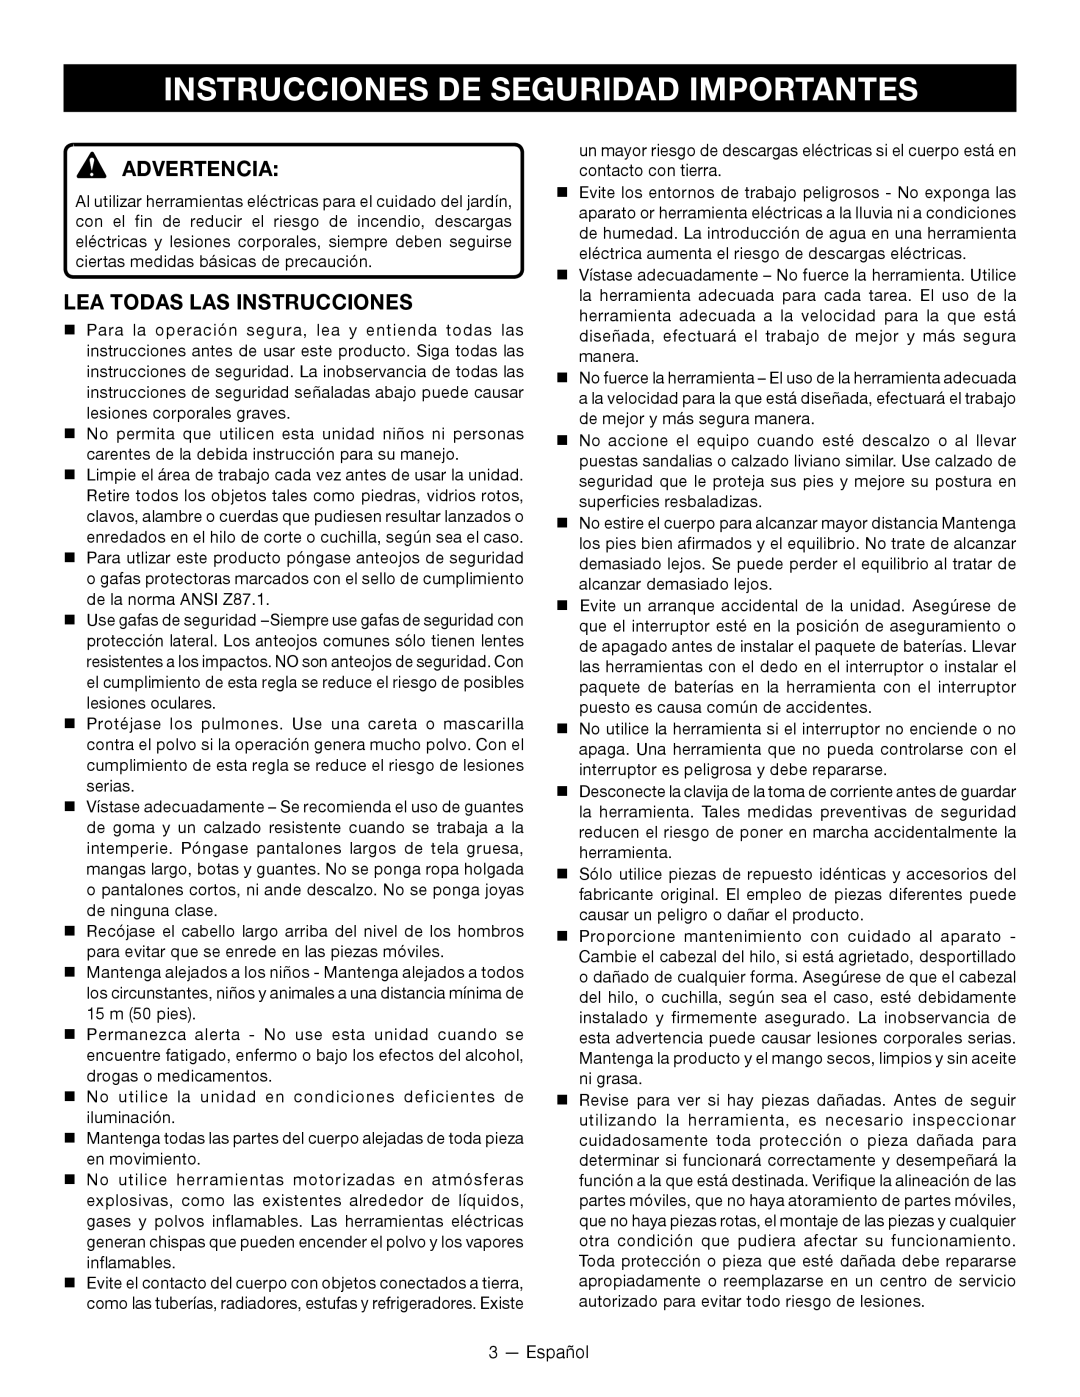 Ryobi P2005 manuel dutilisation Instrucciones De Seguridad Importantes, Advertencia, Lea Todas Las Instrucciones 